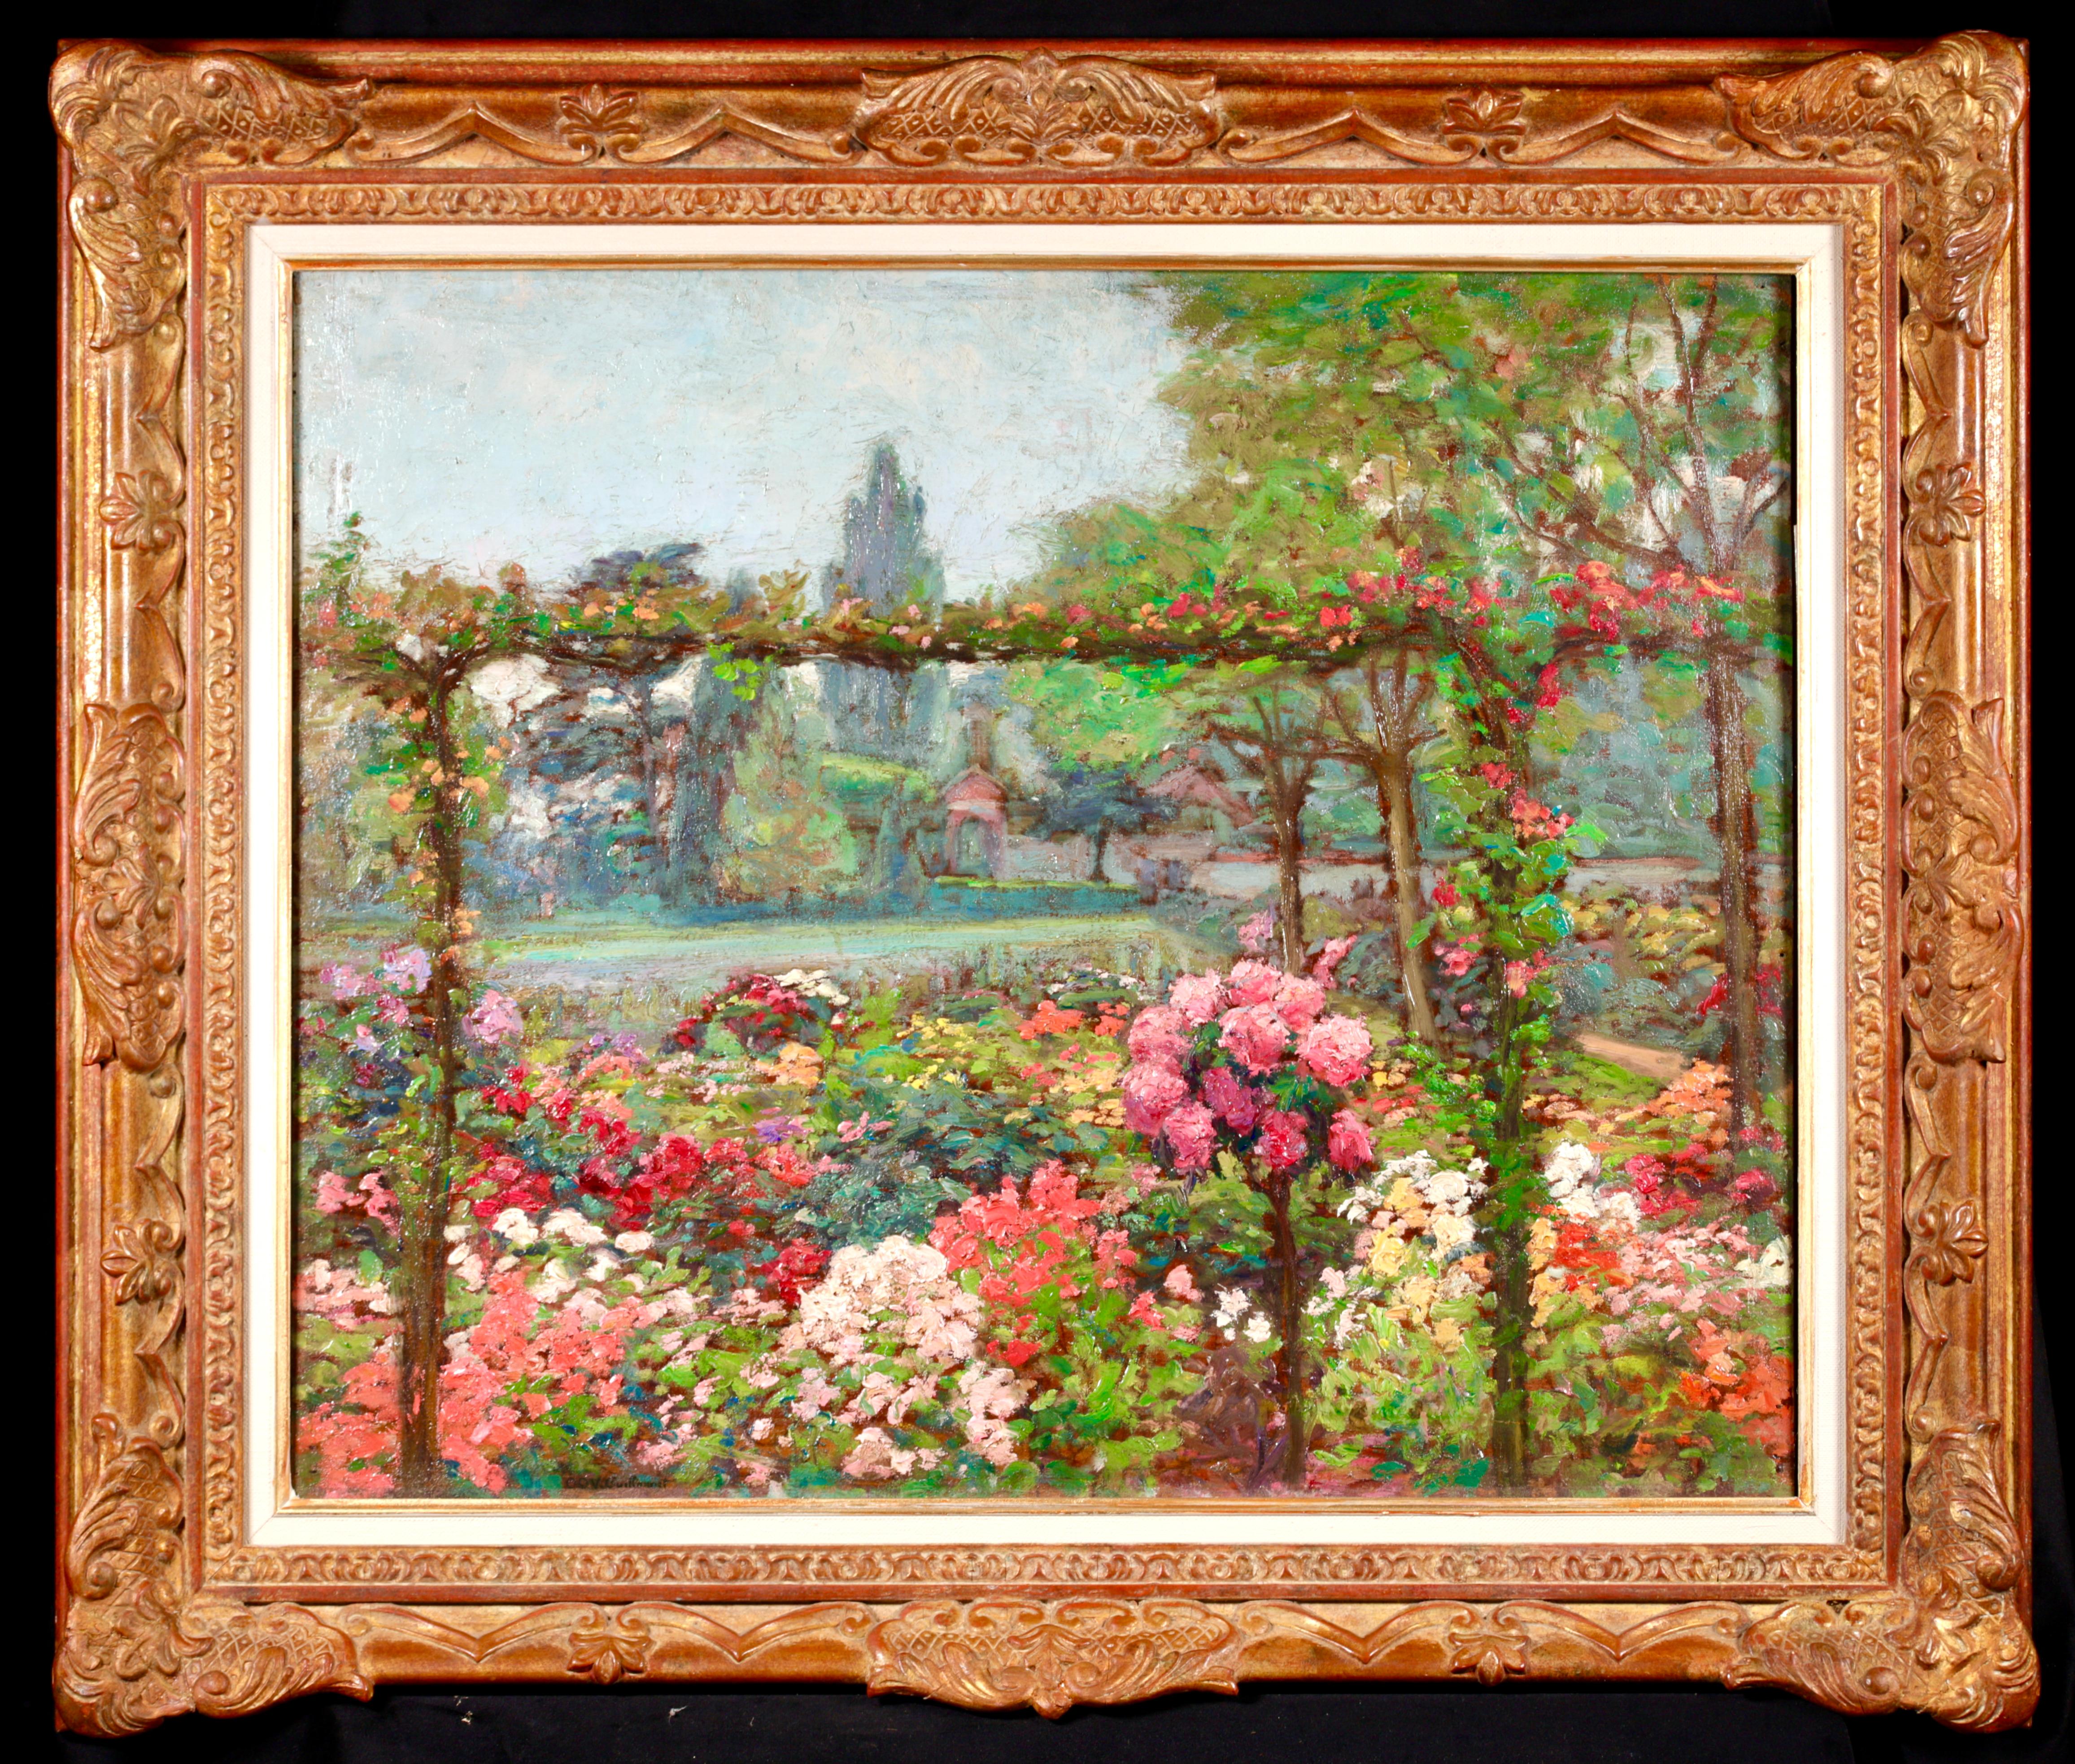 Un jardin d'ete - Post Impressionist Flowers Landscape Oil by Octave Guillonnet